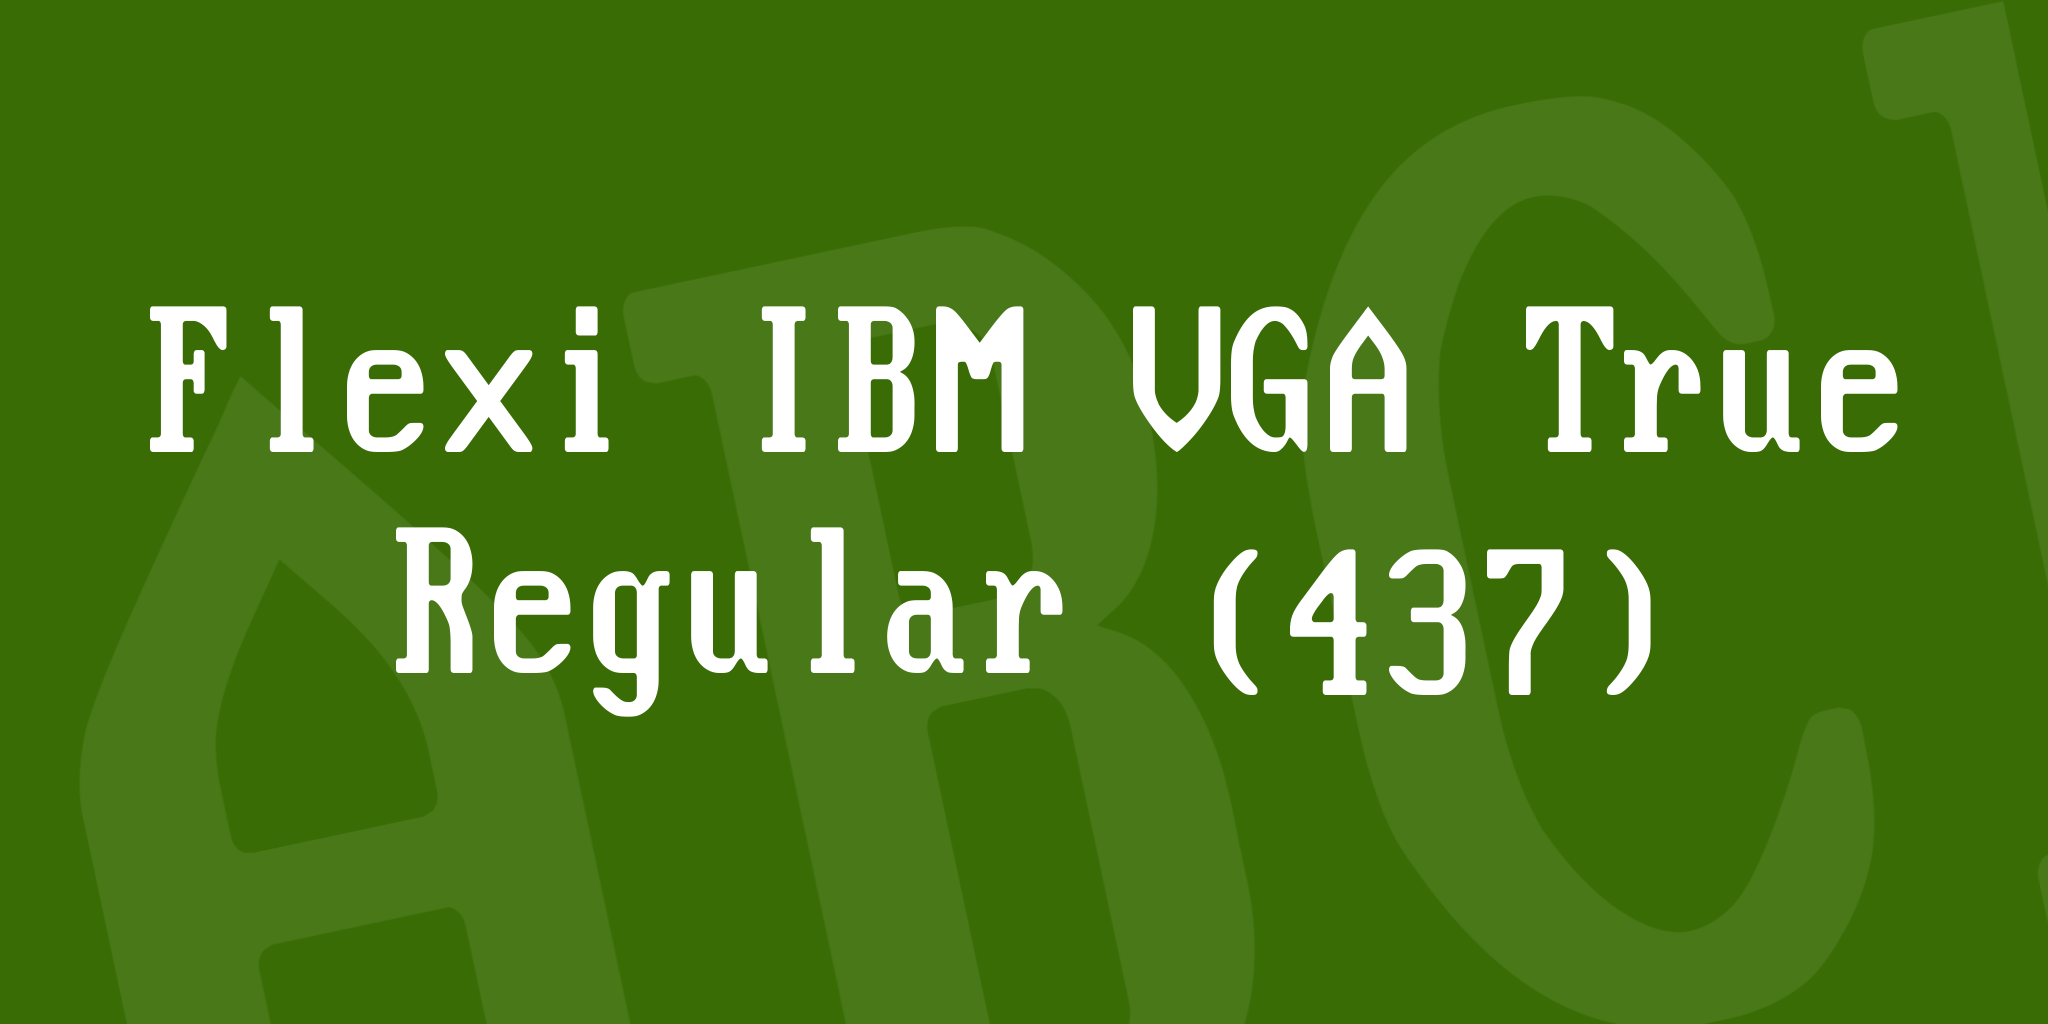 Flexi IBM VGA True